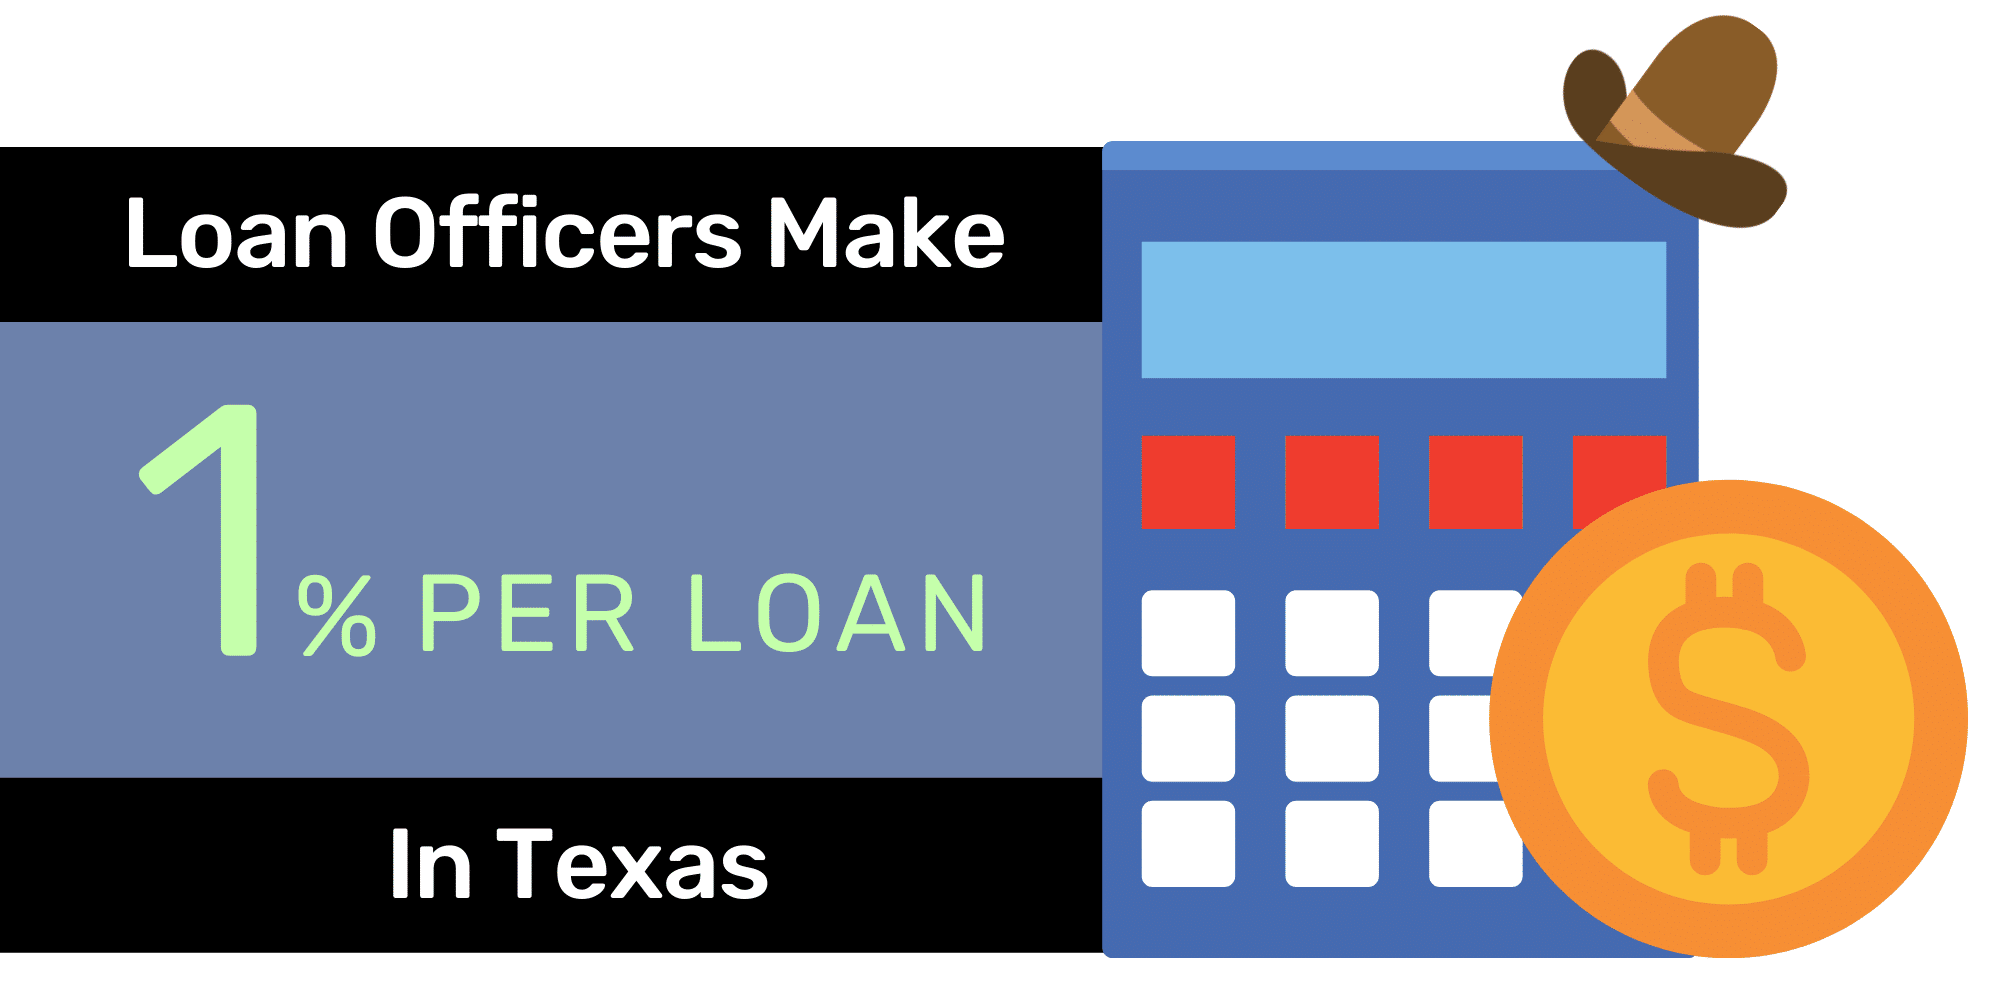 Mortgage Loan Officer Earnings Per Loan in Texas